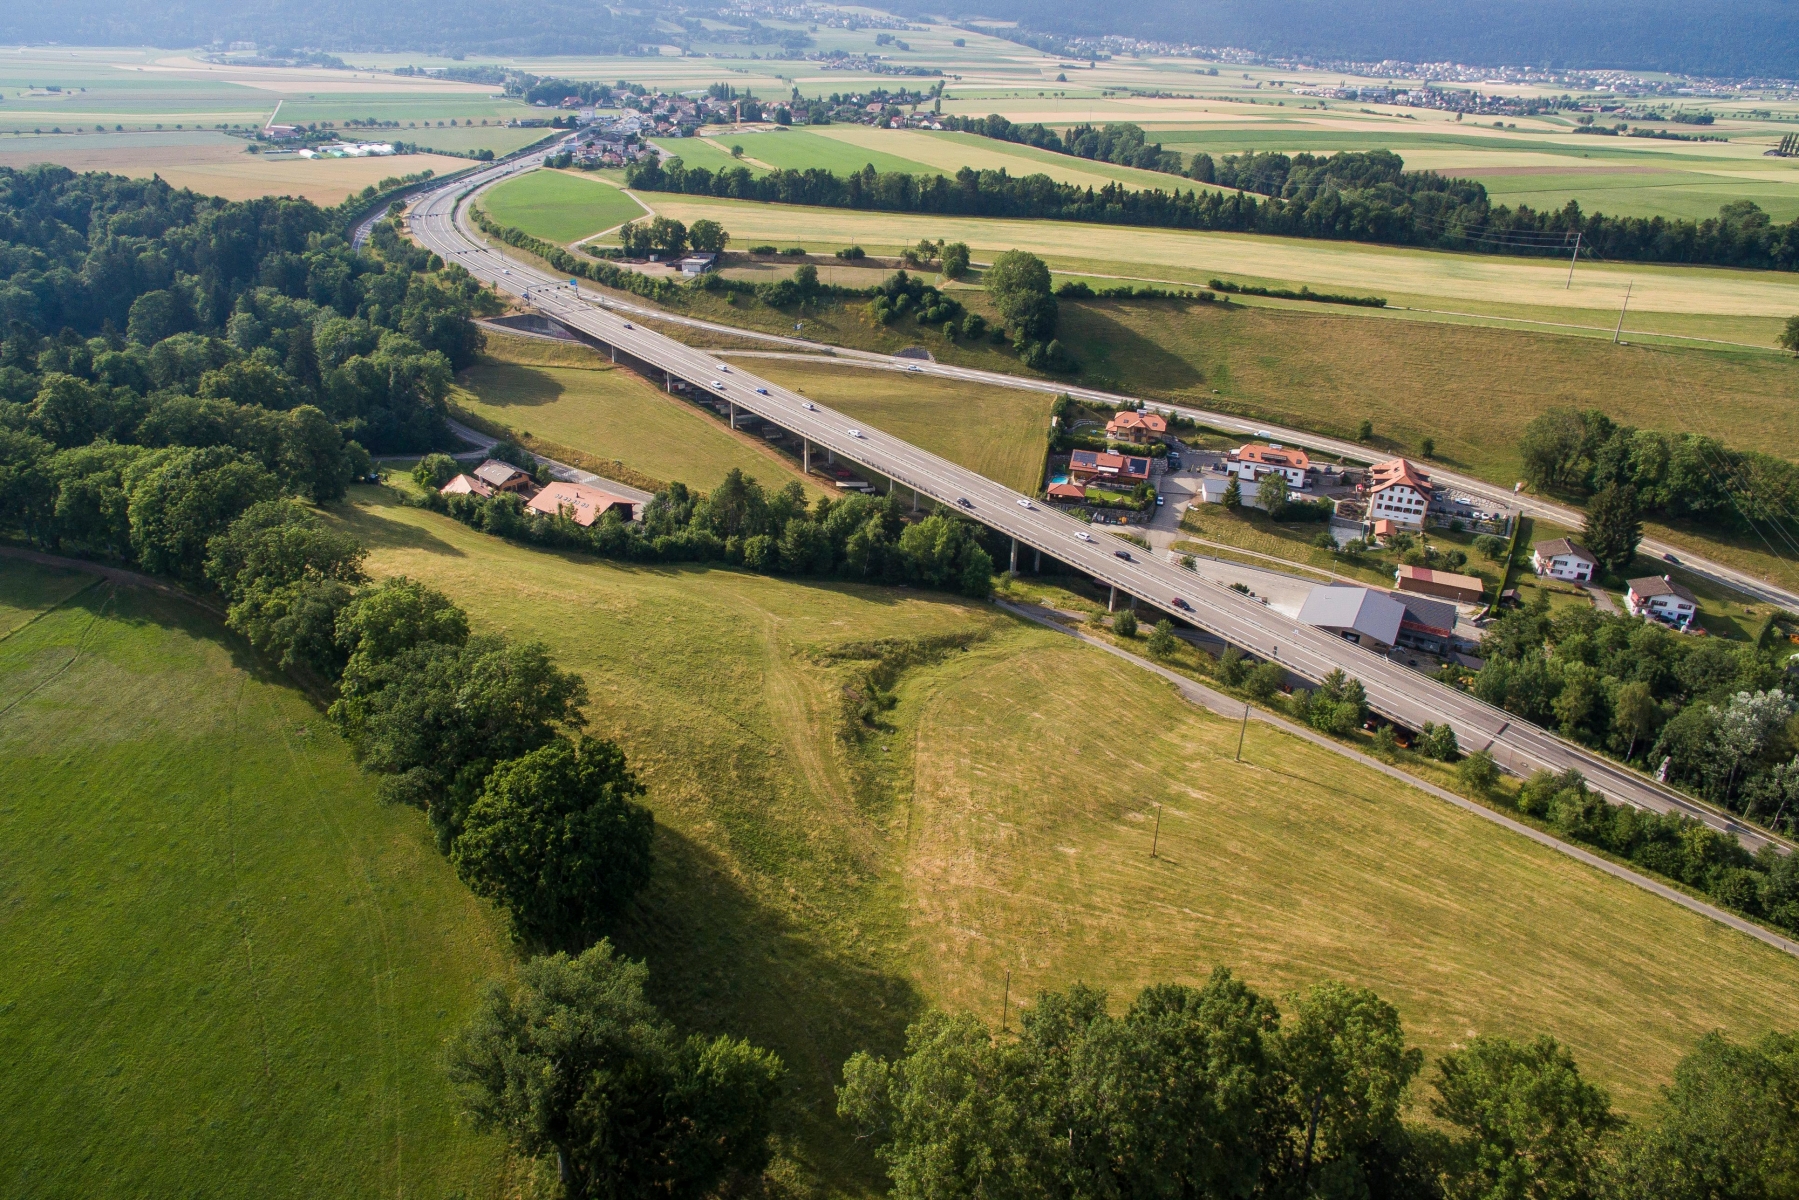 Vue aerienne du pont de Valangin et de la H20

Valangin, le 05.07.2015
Photo : Lucas Vuitel  PONT DE VALANGIN